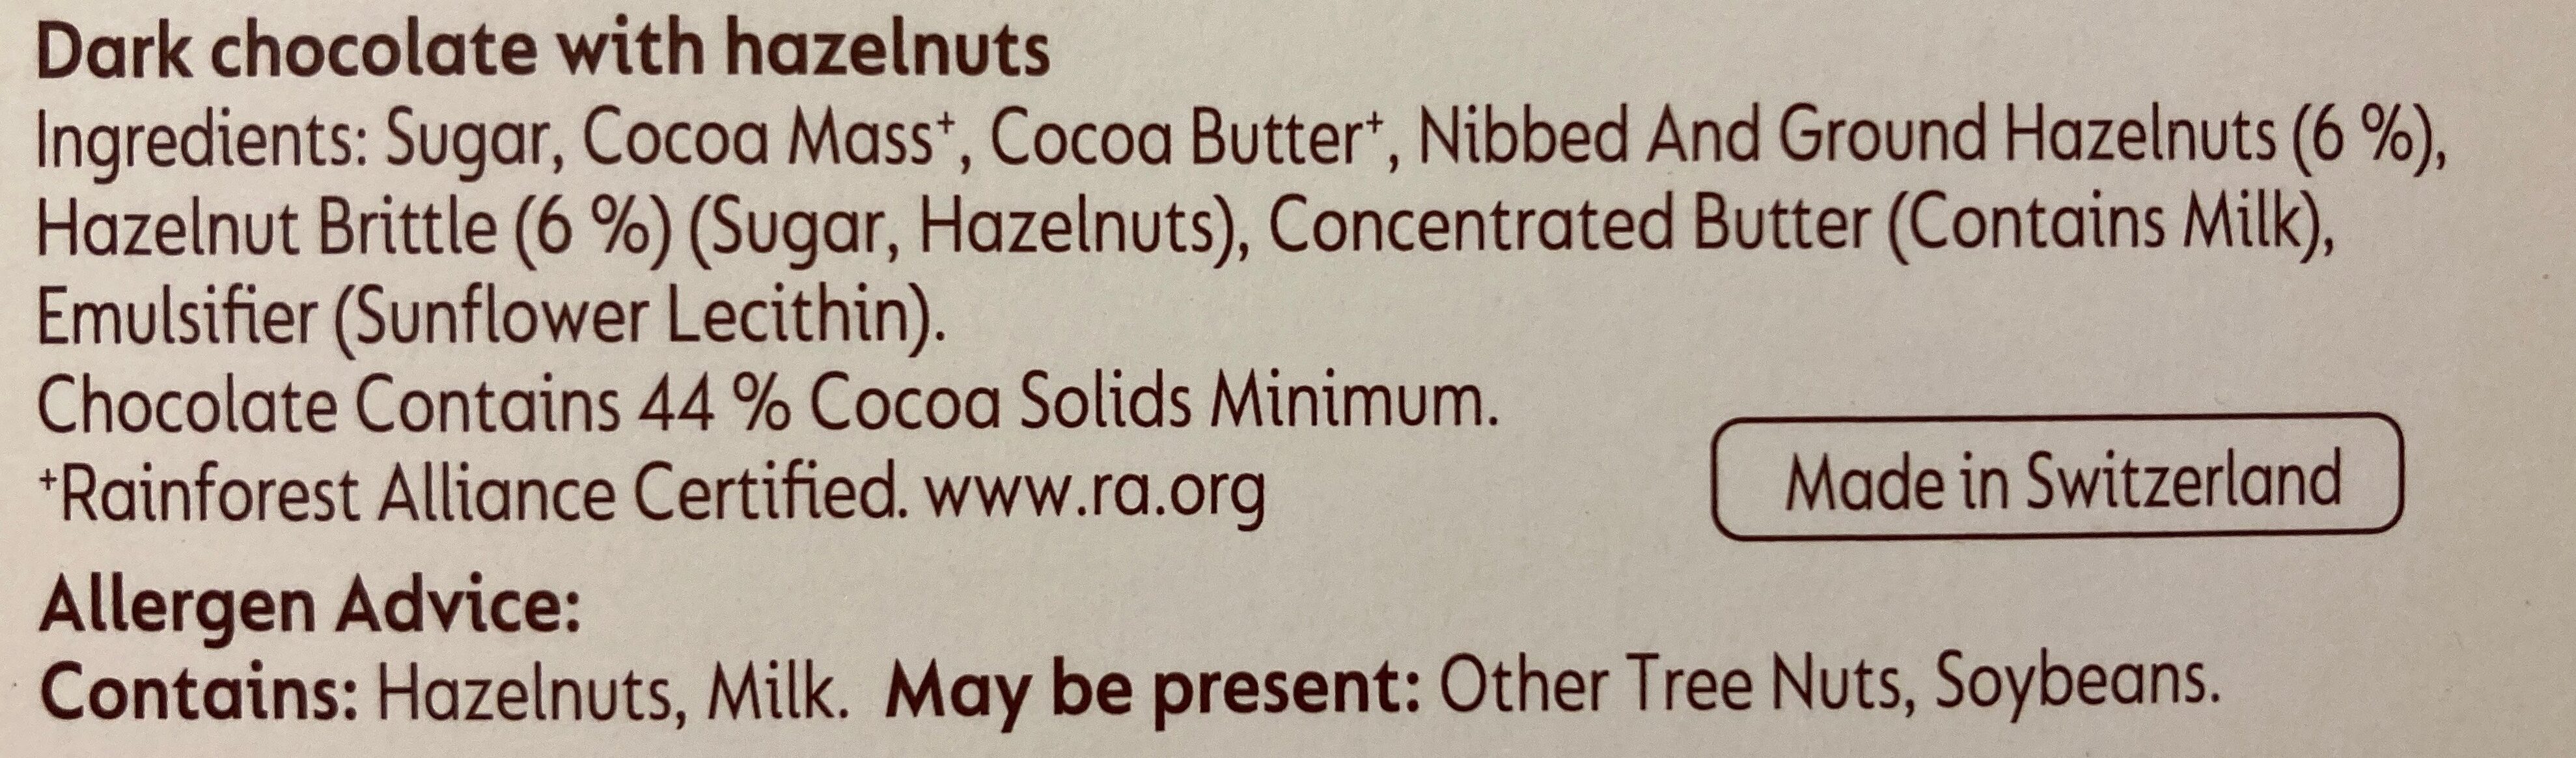 Dark crunchy hazelnut - Ingredients